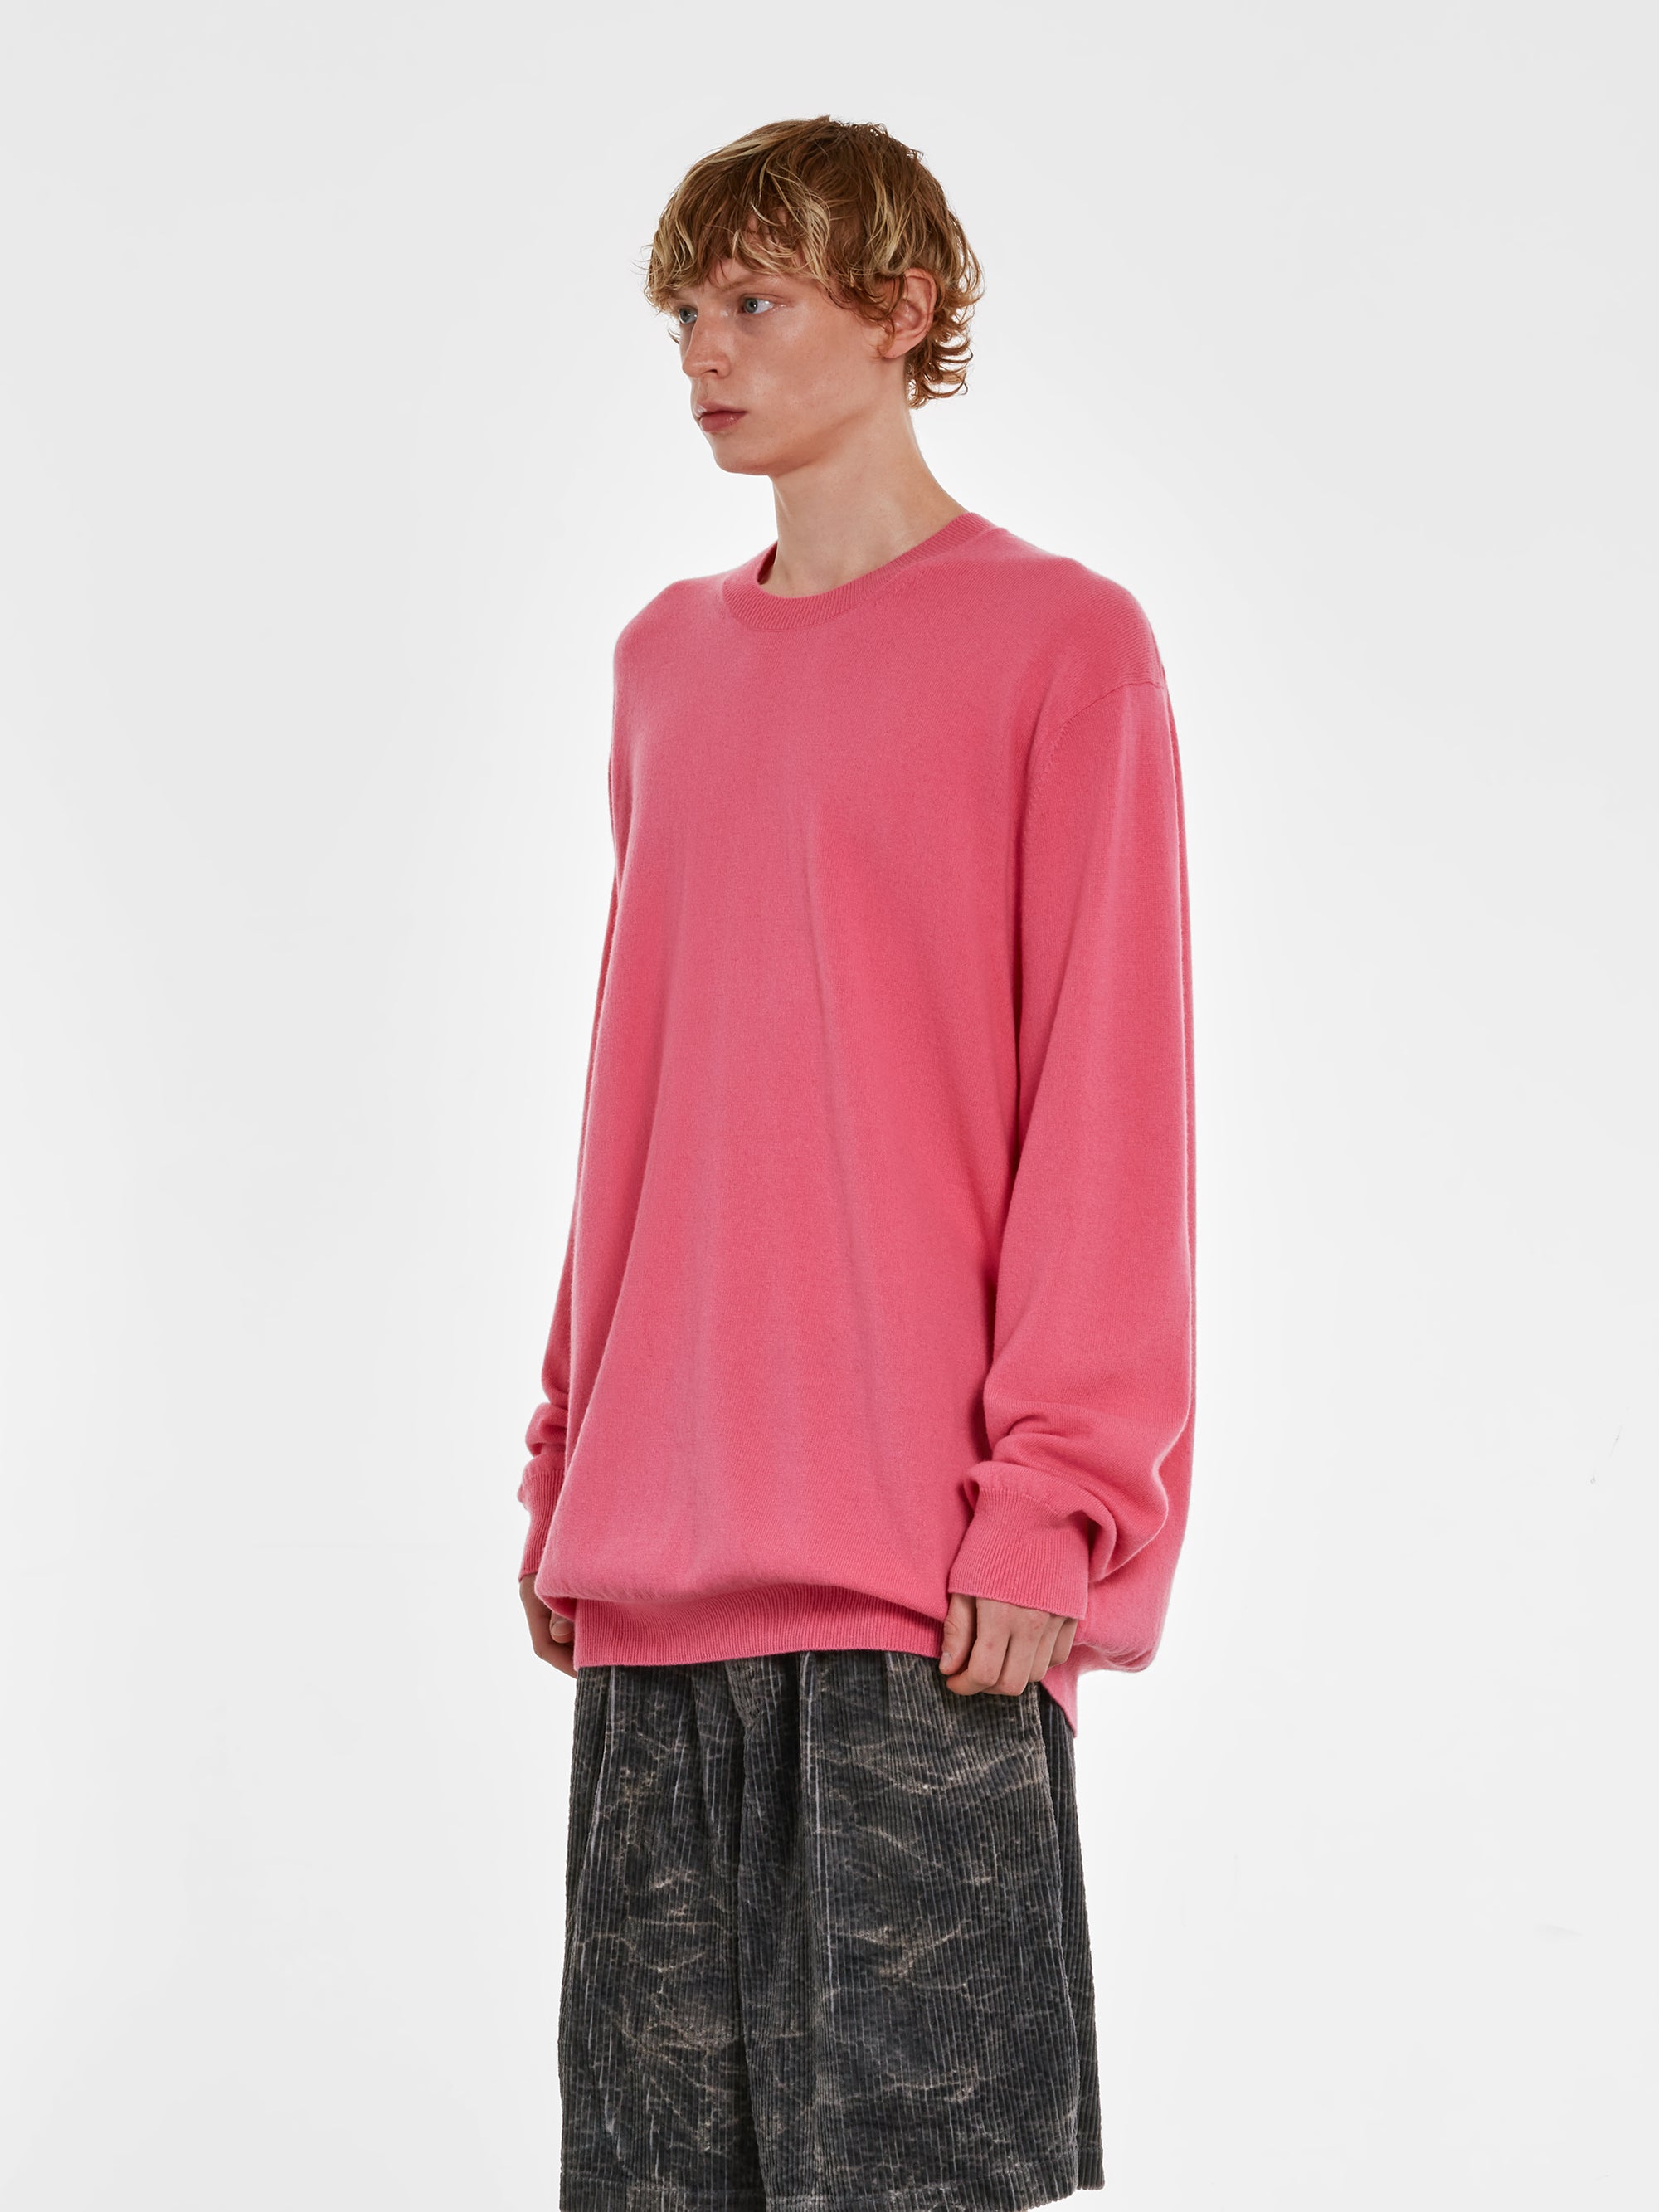 CDG Shirt - Men's Wool Sweater - (Pink) view 2